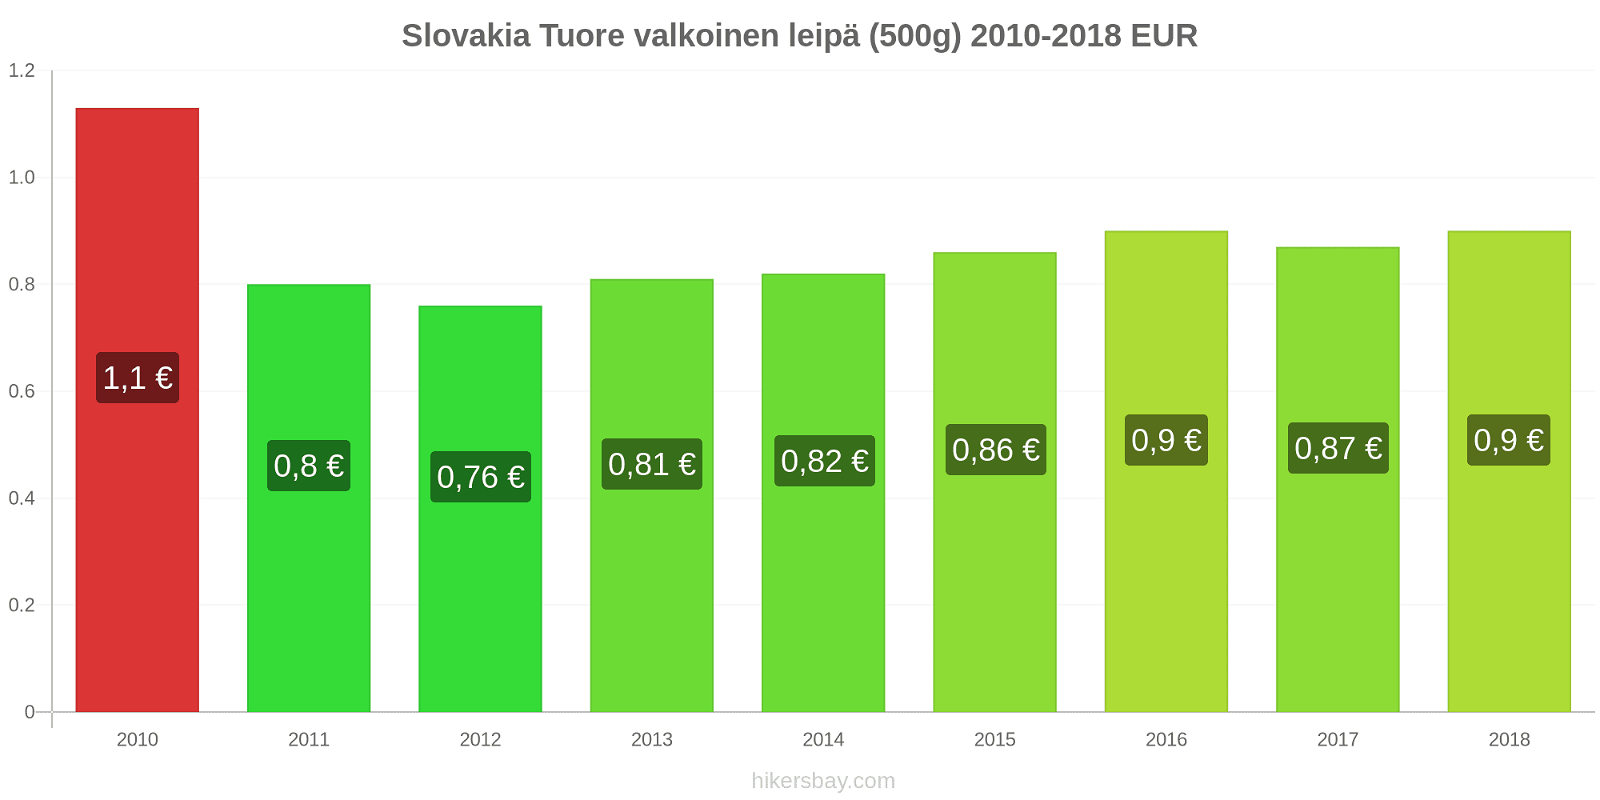 Slovakia hintojen muutokset Tuore valkoinen leipä (500g) hikersbay.com